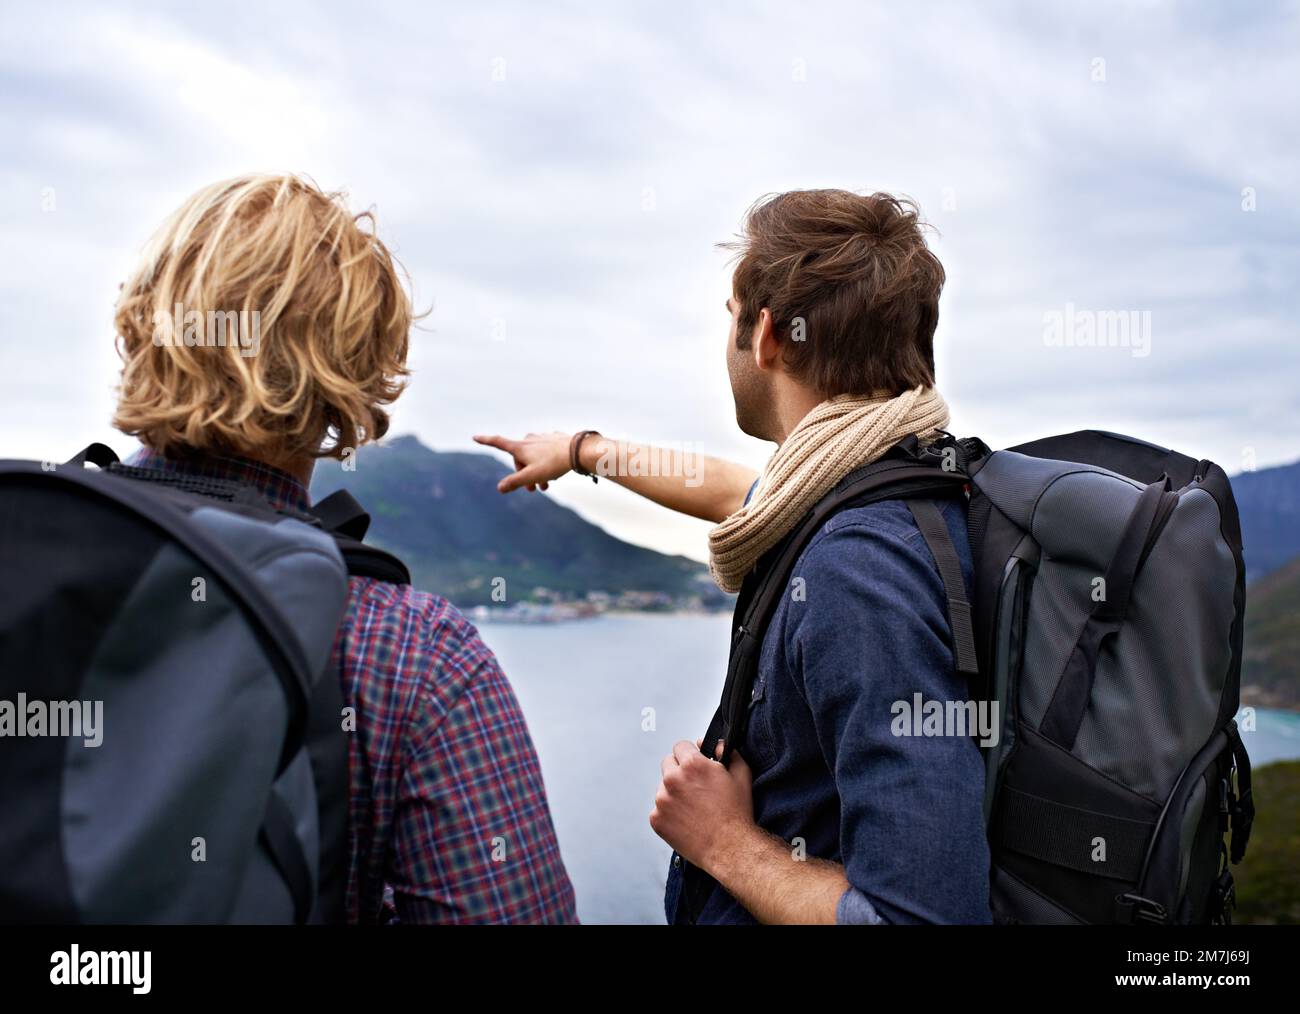 Dovremmo andare a esplorare quest'area. Due backpackers che ammirano una splendida vista. Foto Stock